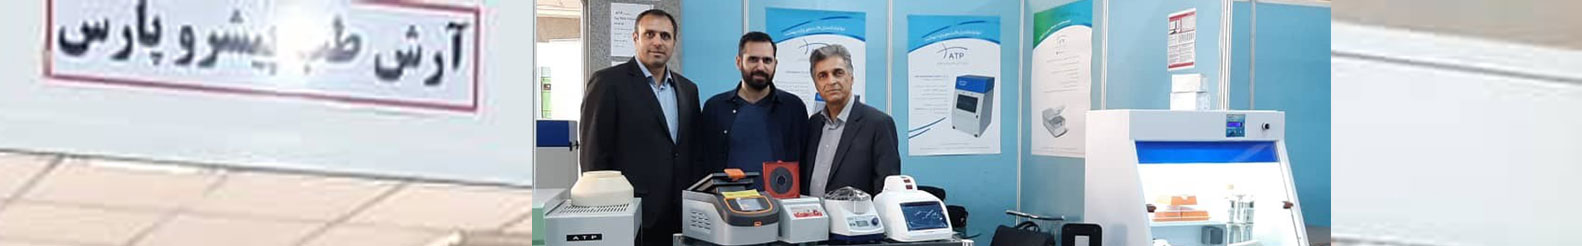 تجهیزات آزمایشگاهی آرش طب پیشرو پارس تنها تولید کننده ژل داک با تائیدیه CE اروپا در ایران 